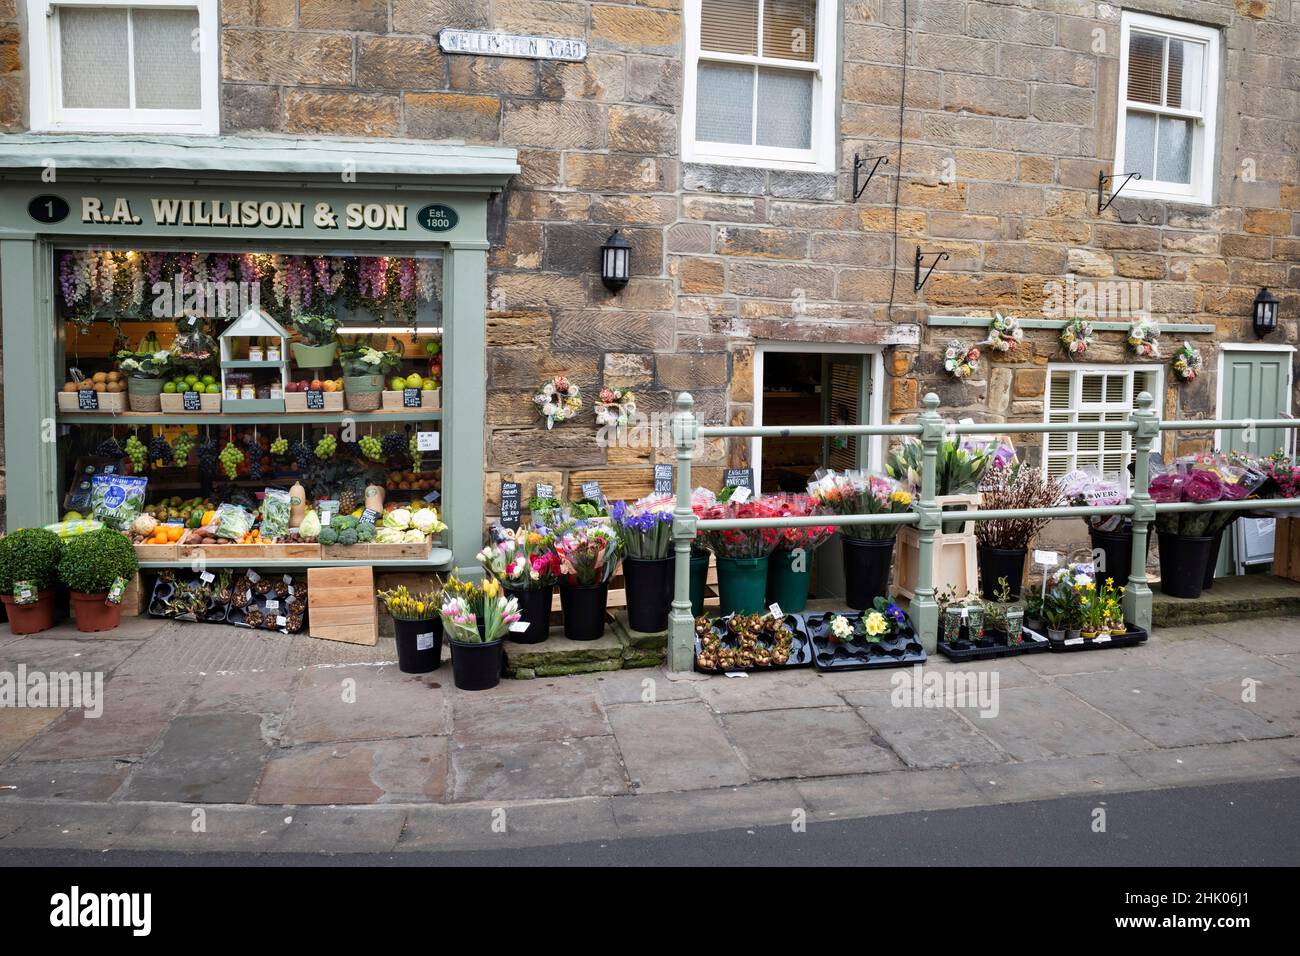 R A Willison Un piccolo negozio di frutta e fiori, fondato nel 1800, a Whitby, North Yorkshire Inghilterra UK Foto Stock